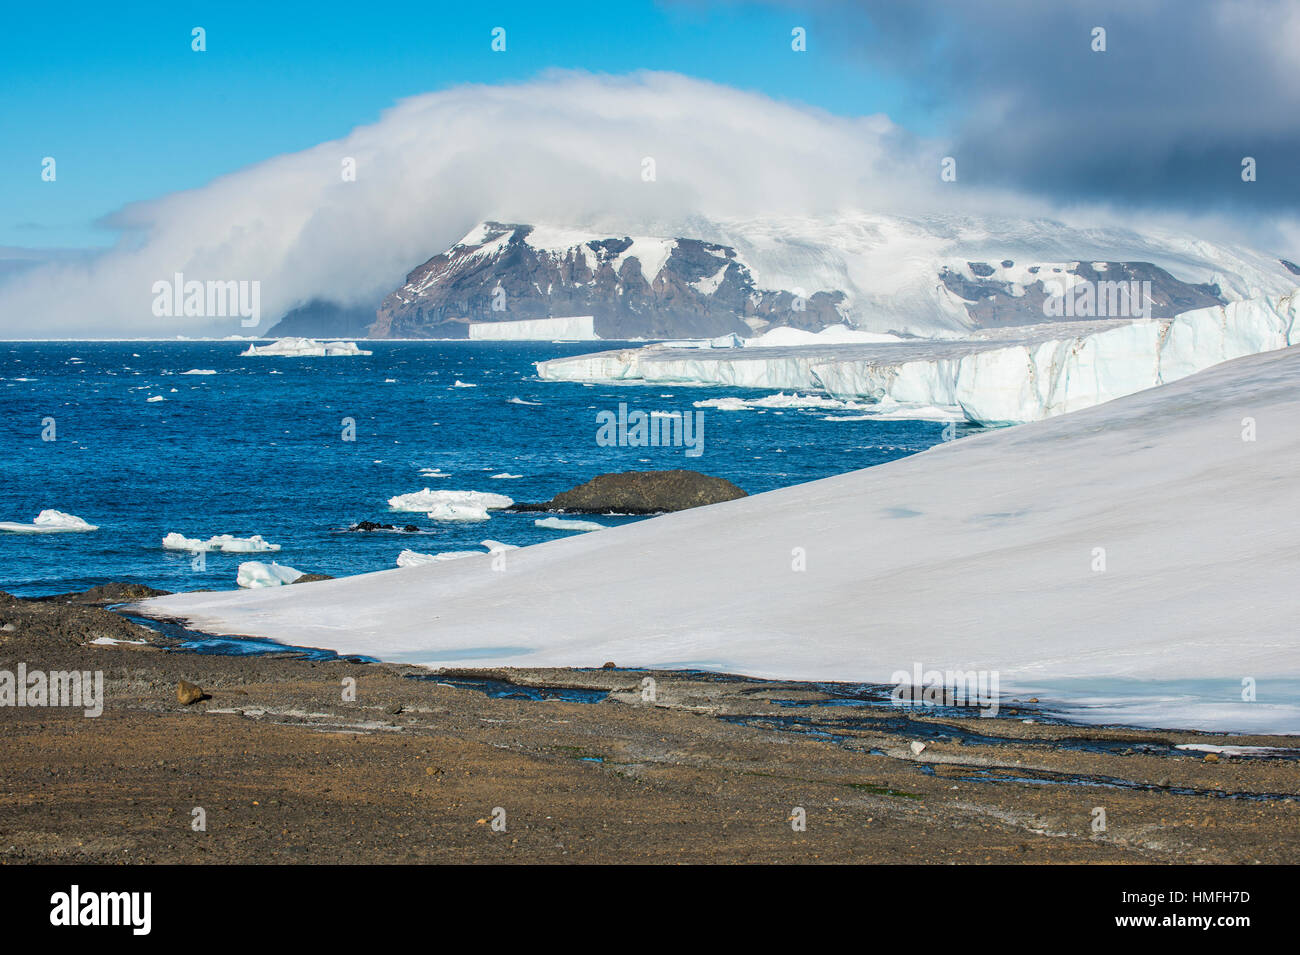 Glacier qui coule dans l'océan, Brown Bluff, l'Antarctique, régions polaires Banque D'Images